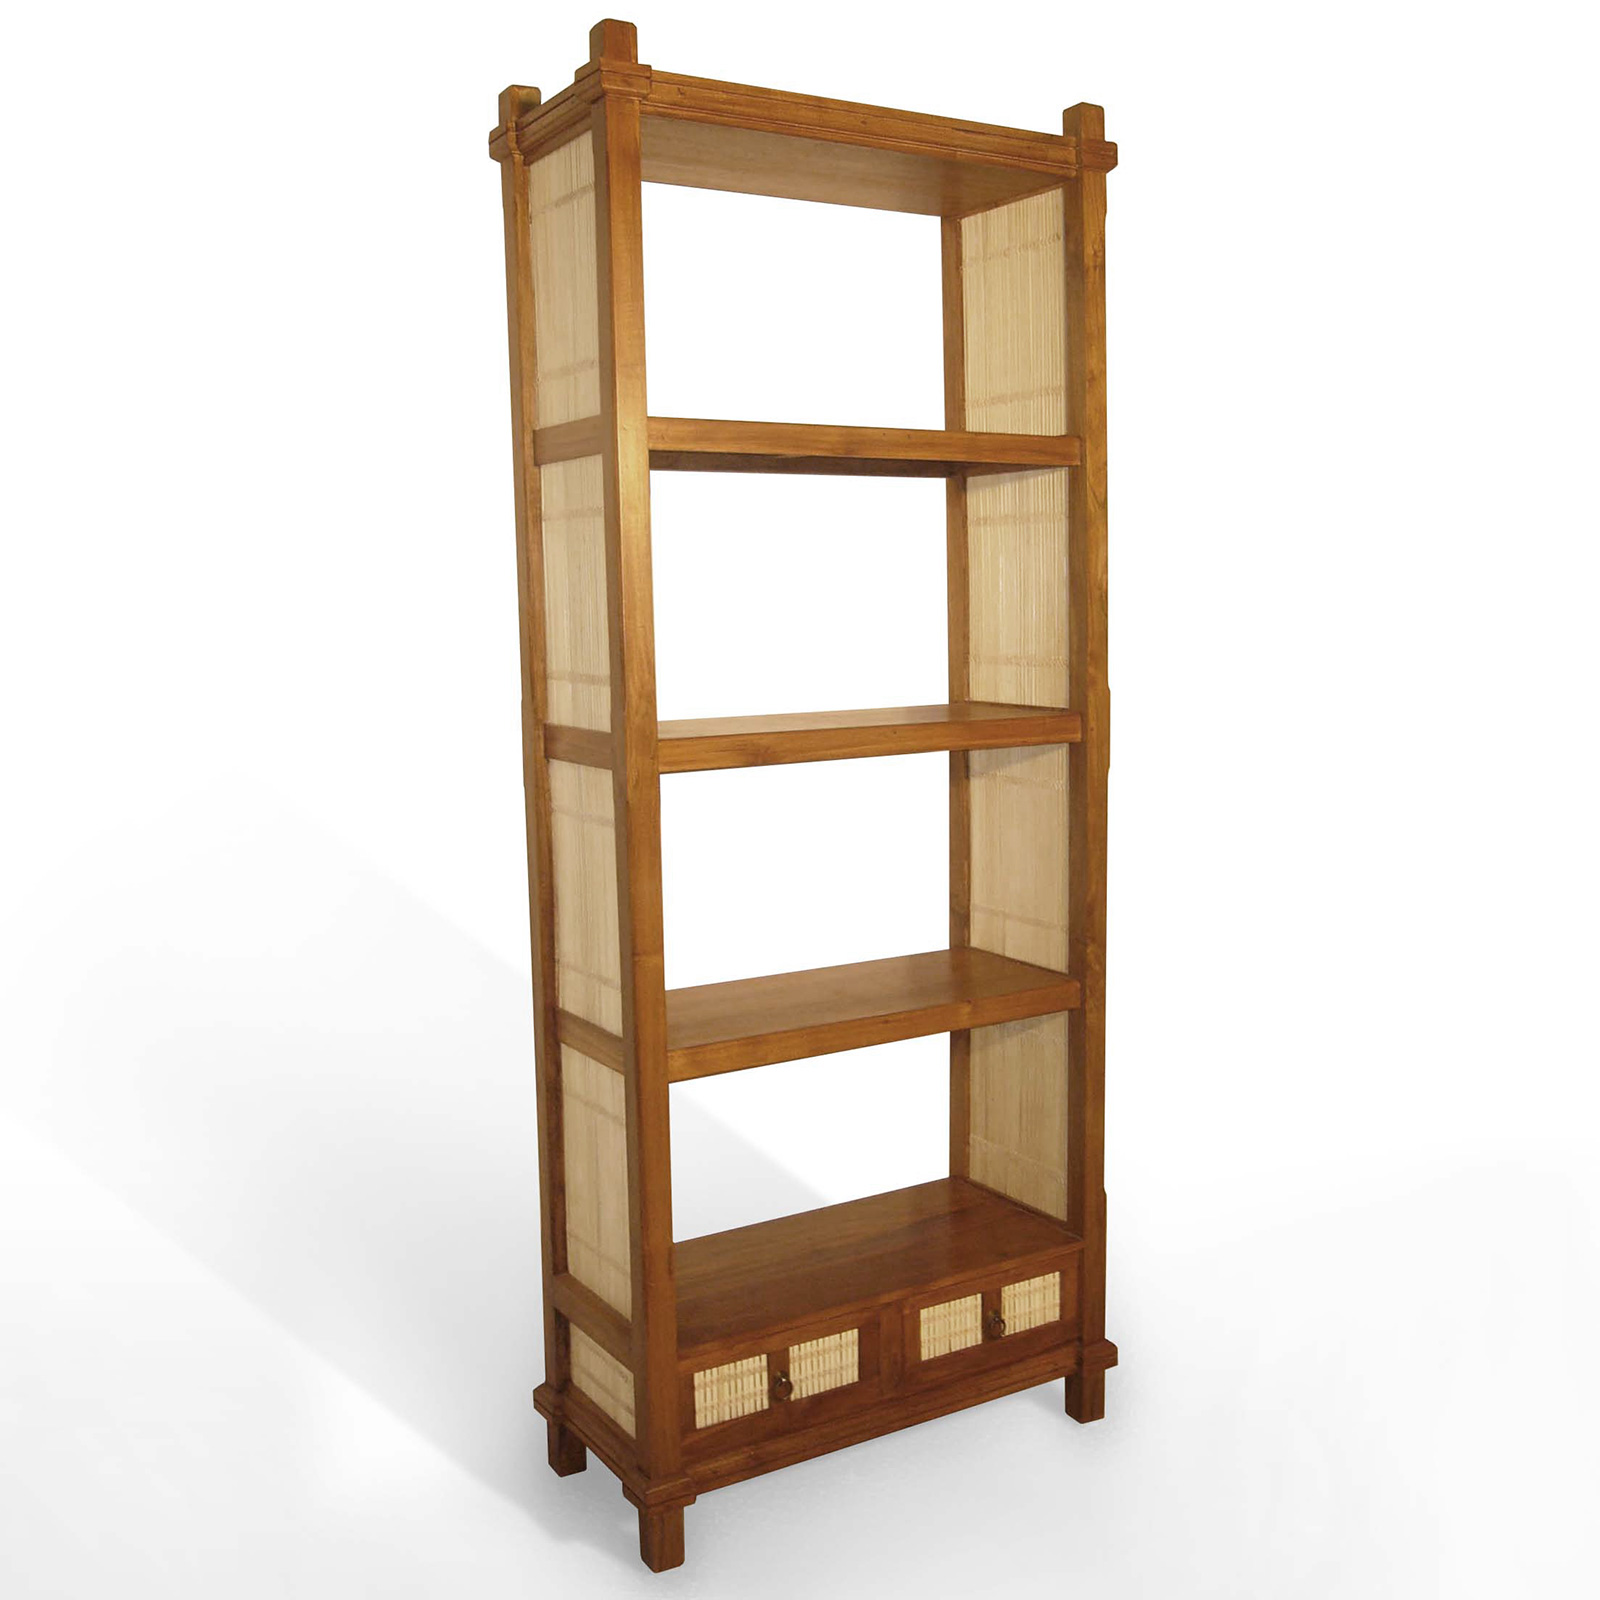 37 gambar desain  lemari rak  buku minimalis  modern  dari kayu Desain  model furniture